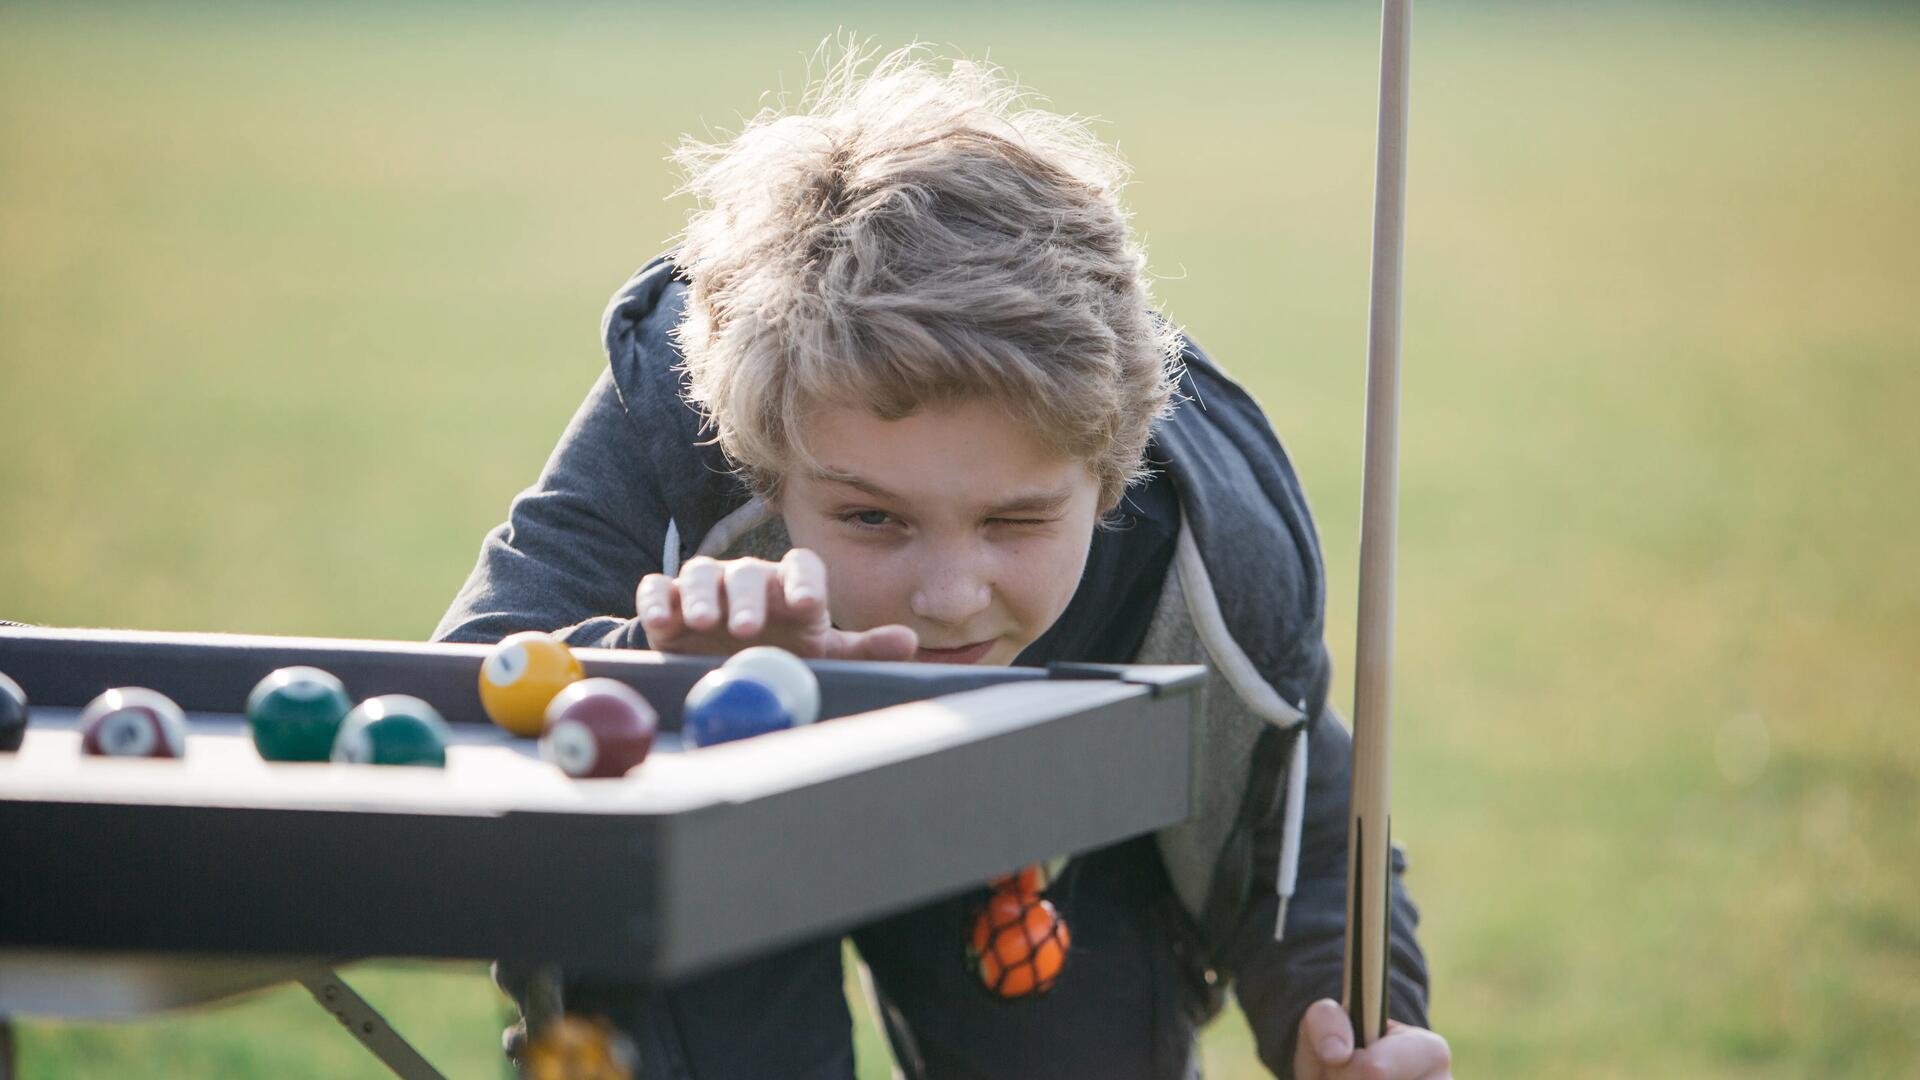 Jouer au billard avec des enfants : quelles règles imaginer ?